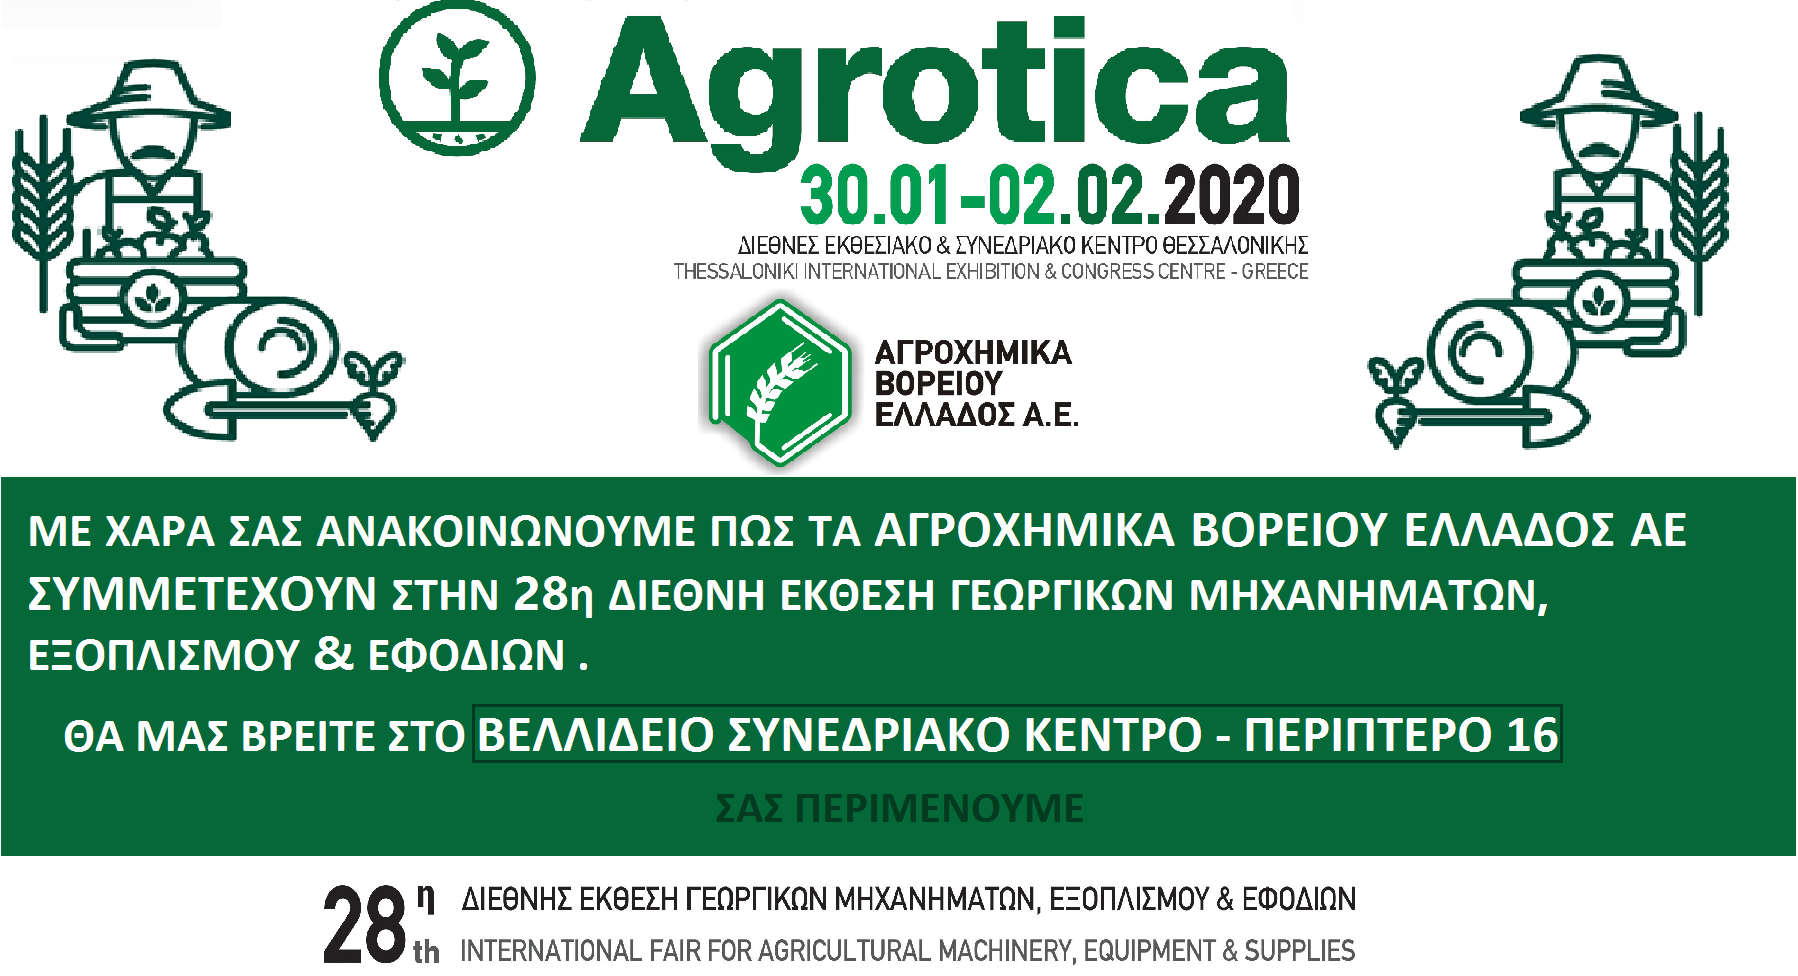 AGROTICA 2020